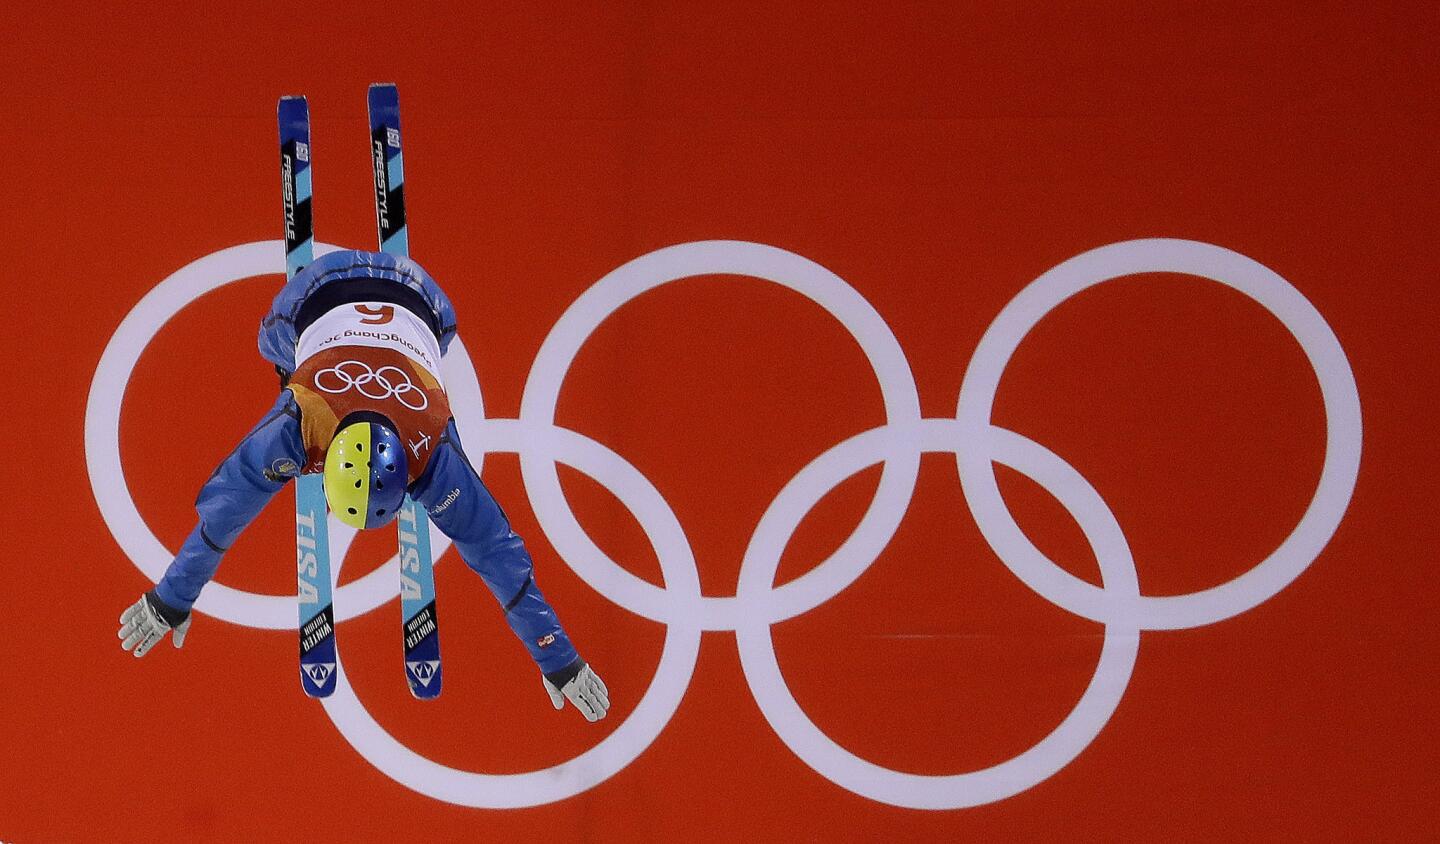 El ucraniano Oleksandr Abramenko salta durante las eliminatorias de la especialidad de aÃ©reos, en el esquÃ acrobÃ¡tico, el sÃ¡bado 17 de febrero de 2018, en los Juegos OlÃmpicos de Pyeongchang, Corea del Sur (AP Foto/Lee Jin-man)